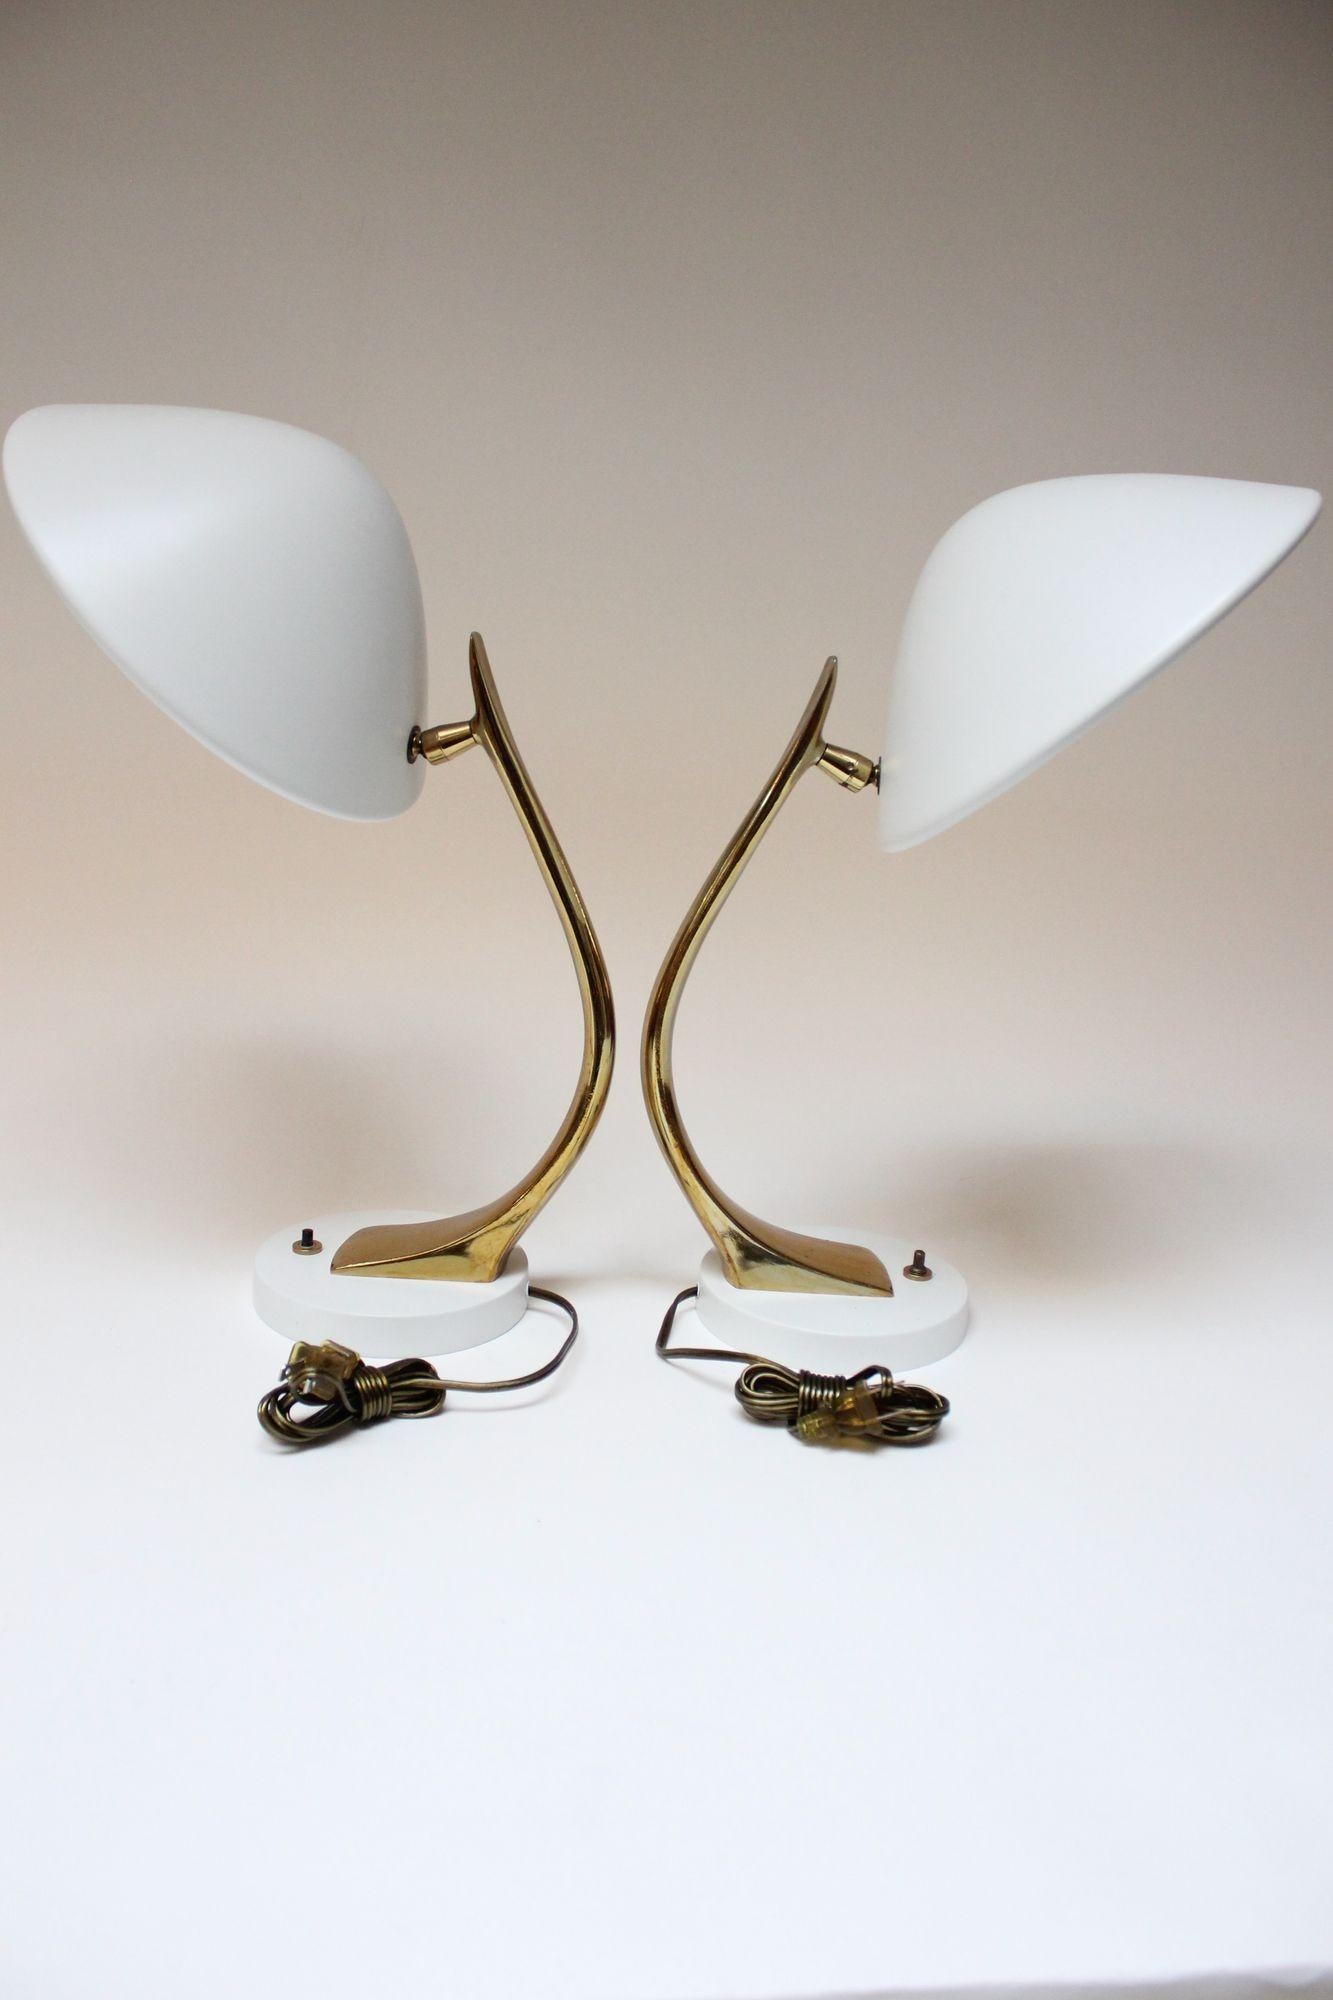 Lampes de table Laurel Lamp Co. en métal émaillé et finition laiton (vers 1960, USA). La tige incurvée en métal finition laiton abrite un abat-jour bombé en métal blanc mat, le tout soutenu par une base circulaire en métal. Mobilité totale sur 360